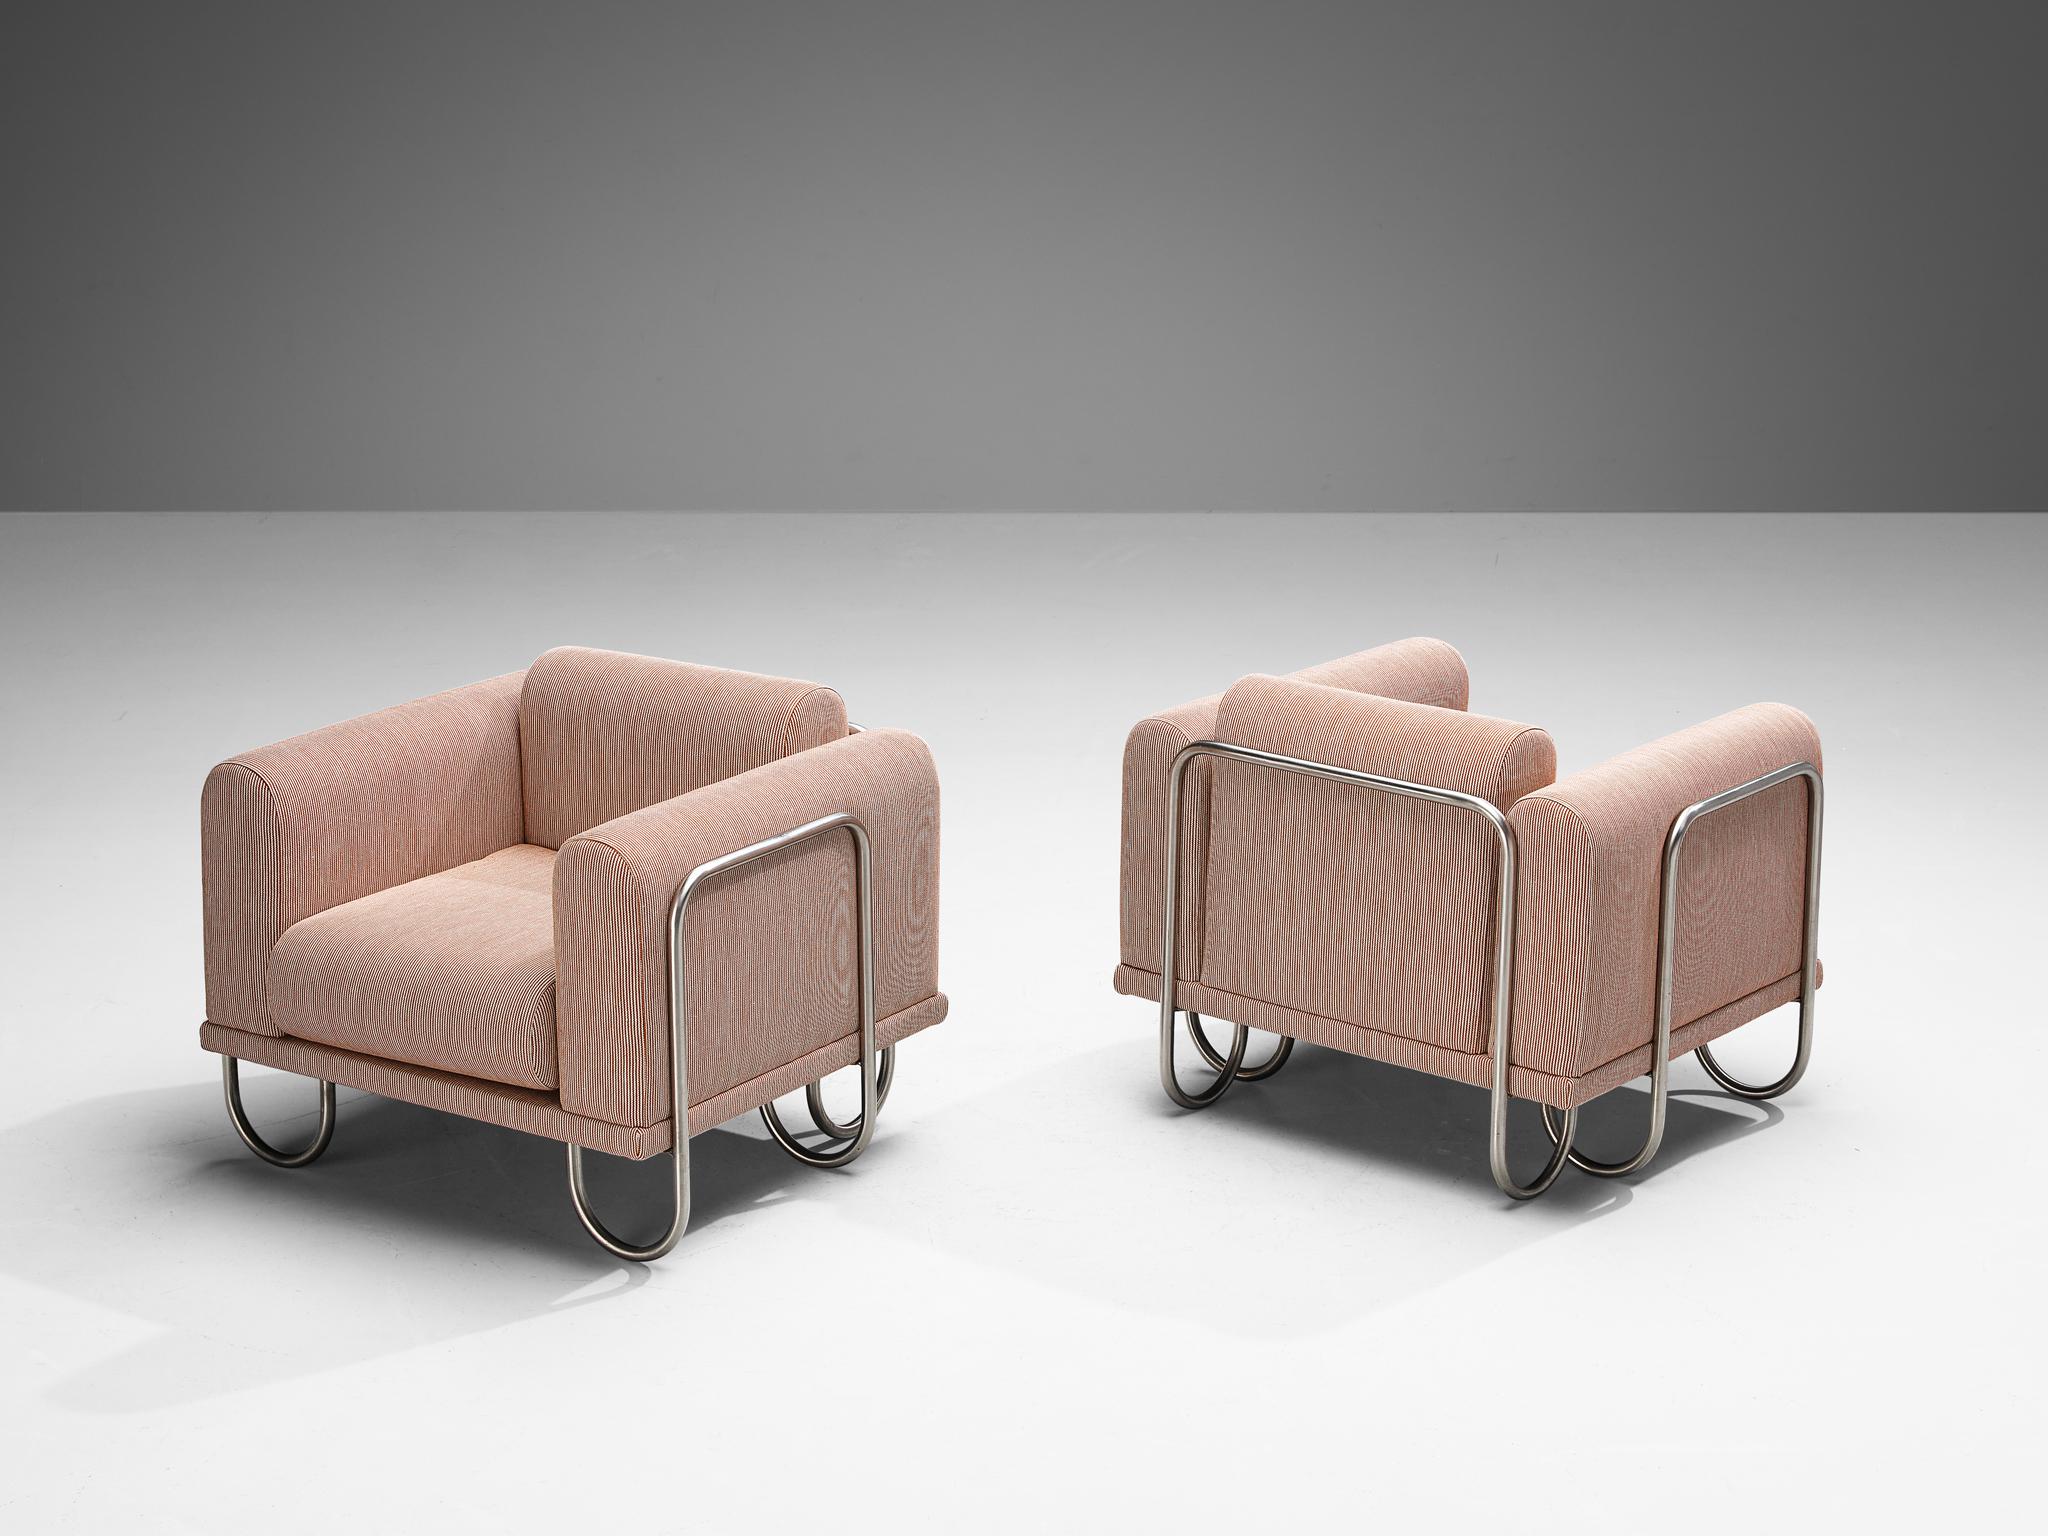 Byron Botker pour Lande, chaises longues, tissu rose, acier chromé, États-Unis, années 1970

Un fauteuil confortable doté d'une structure tubulaire chromée incurvée. Le cadre semble être une ligne courbe continue, se déplaçant vers le haut pour